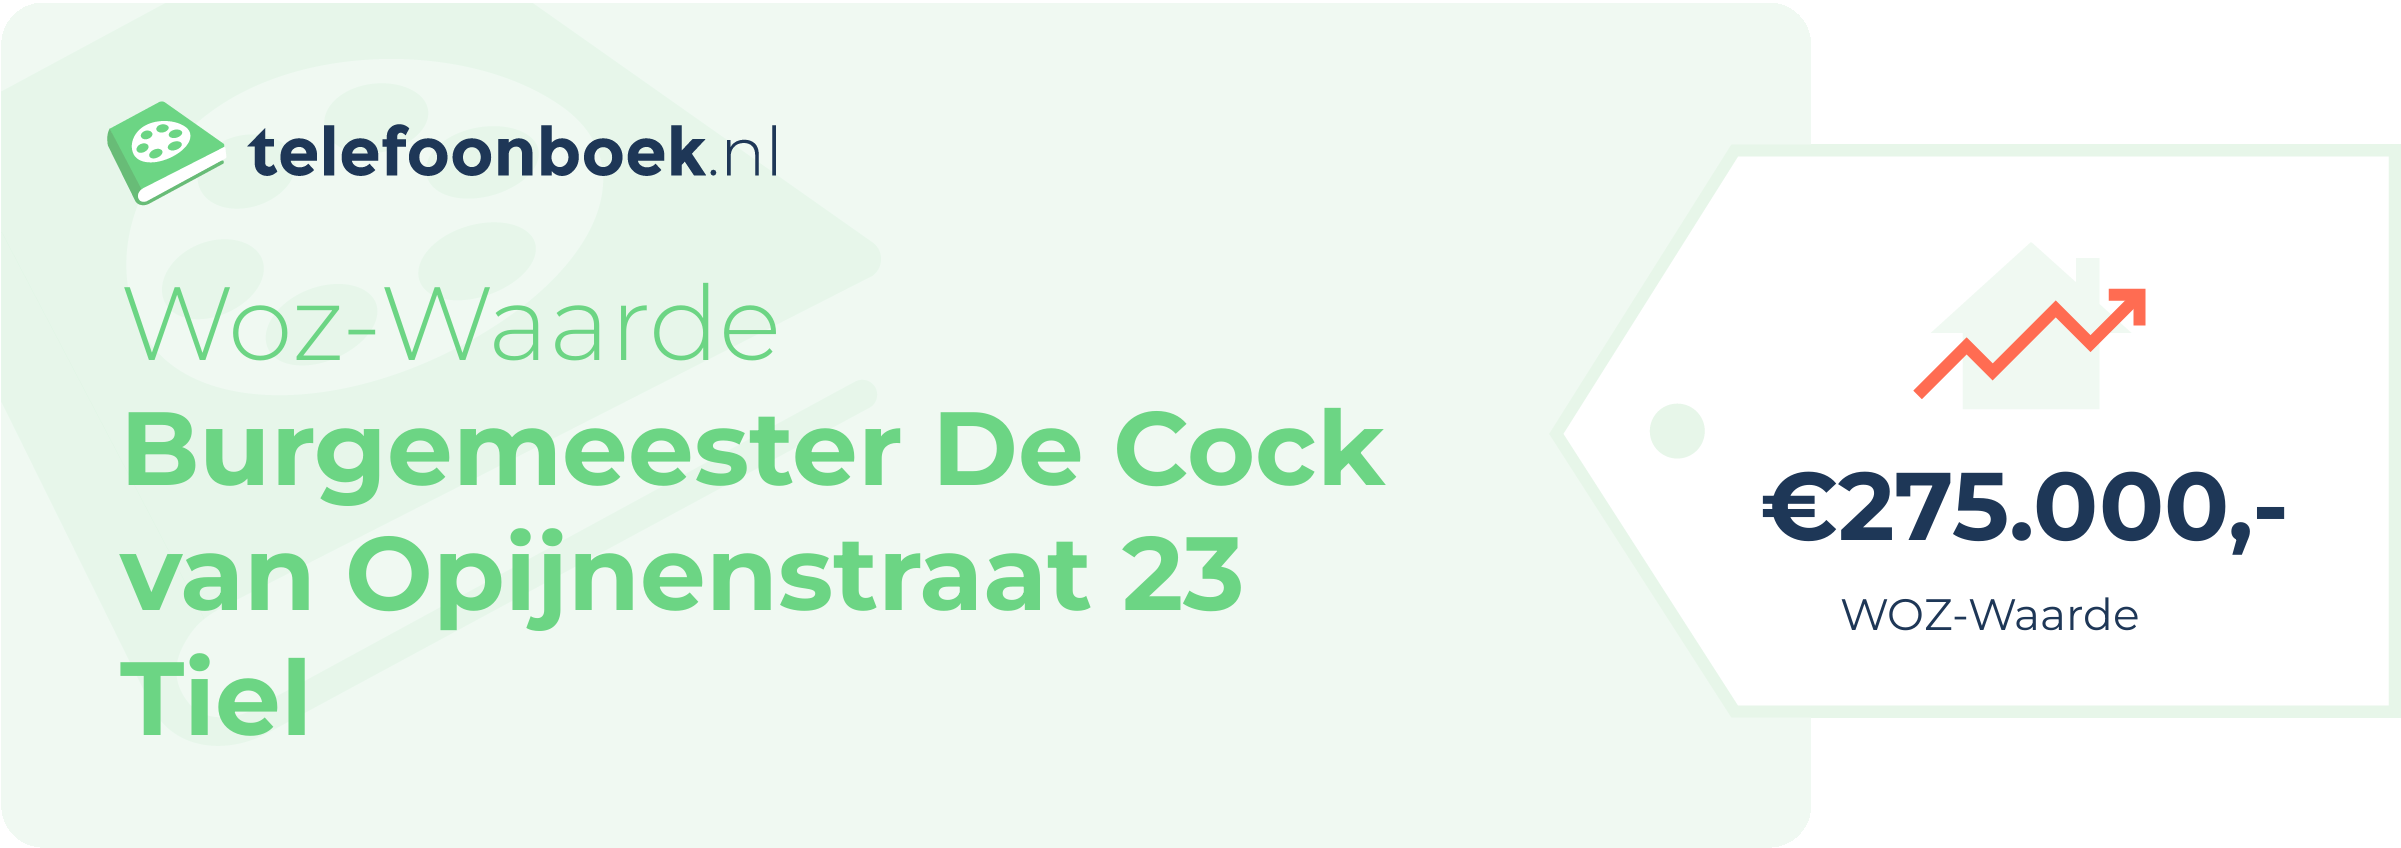 WOZ-waarde Burgemeester De Cock Van Opijnenstraat 23 Tiel